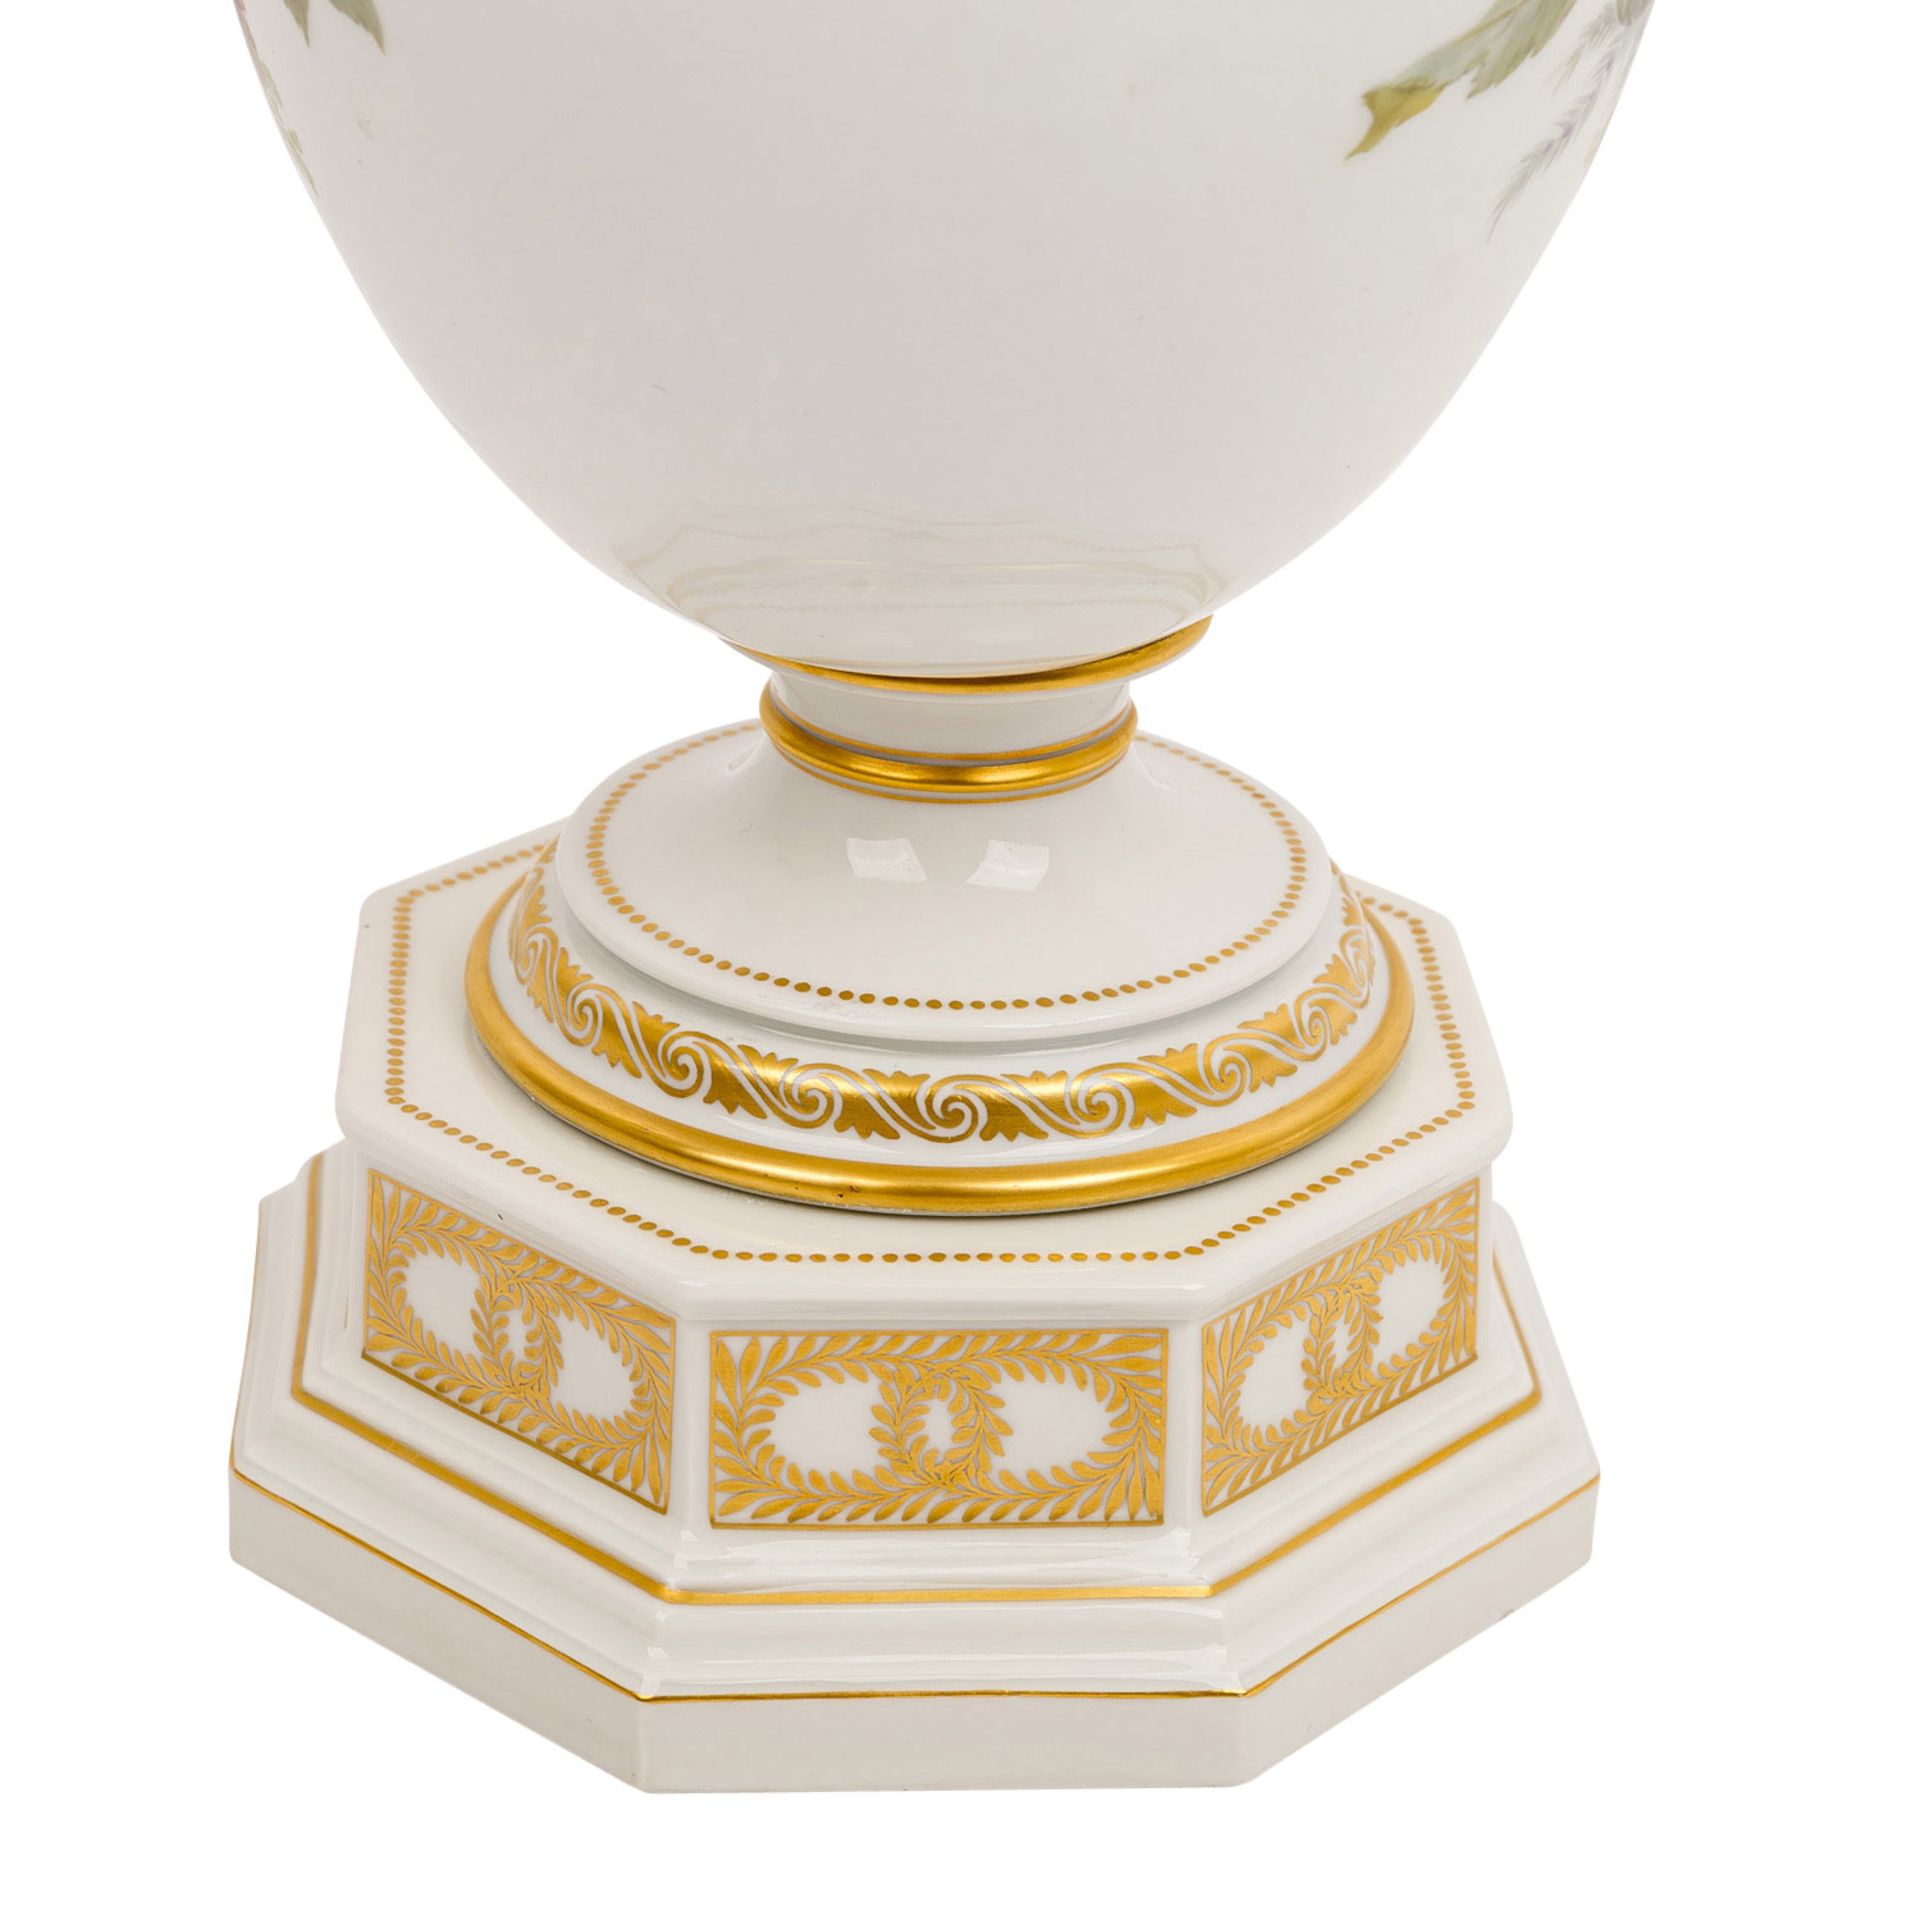 KPM "Vase mit Weichmalerei" 1913Berlin, Porzellan, polychromer Aufglasurdekor, reliefierte - Bild 6 aus 9